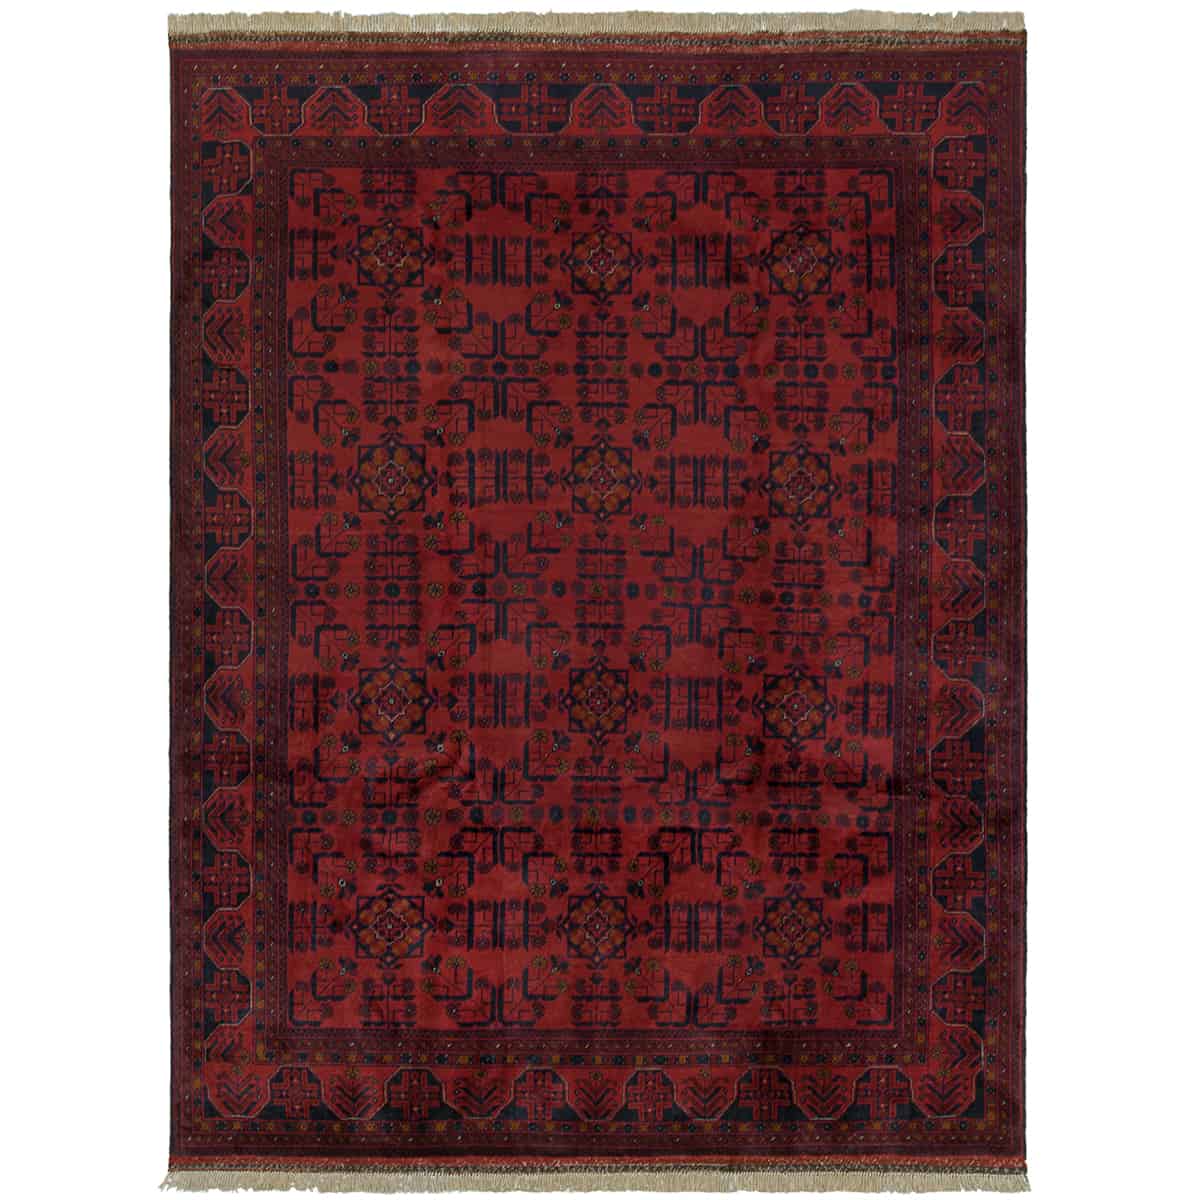  חל ממדי 00 אדום 172x223 | השטיח האדום 